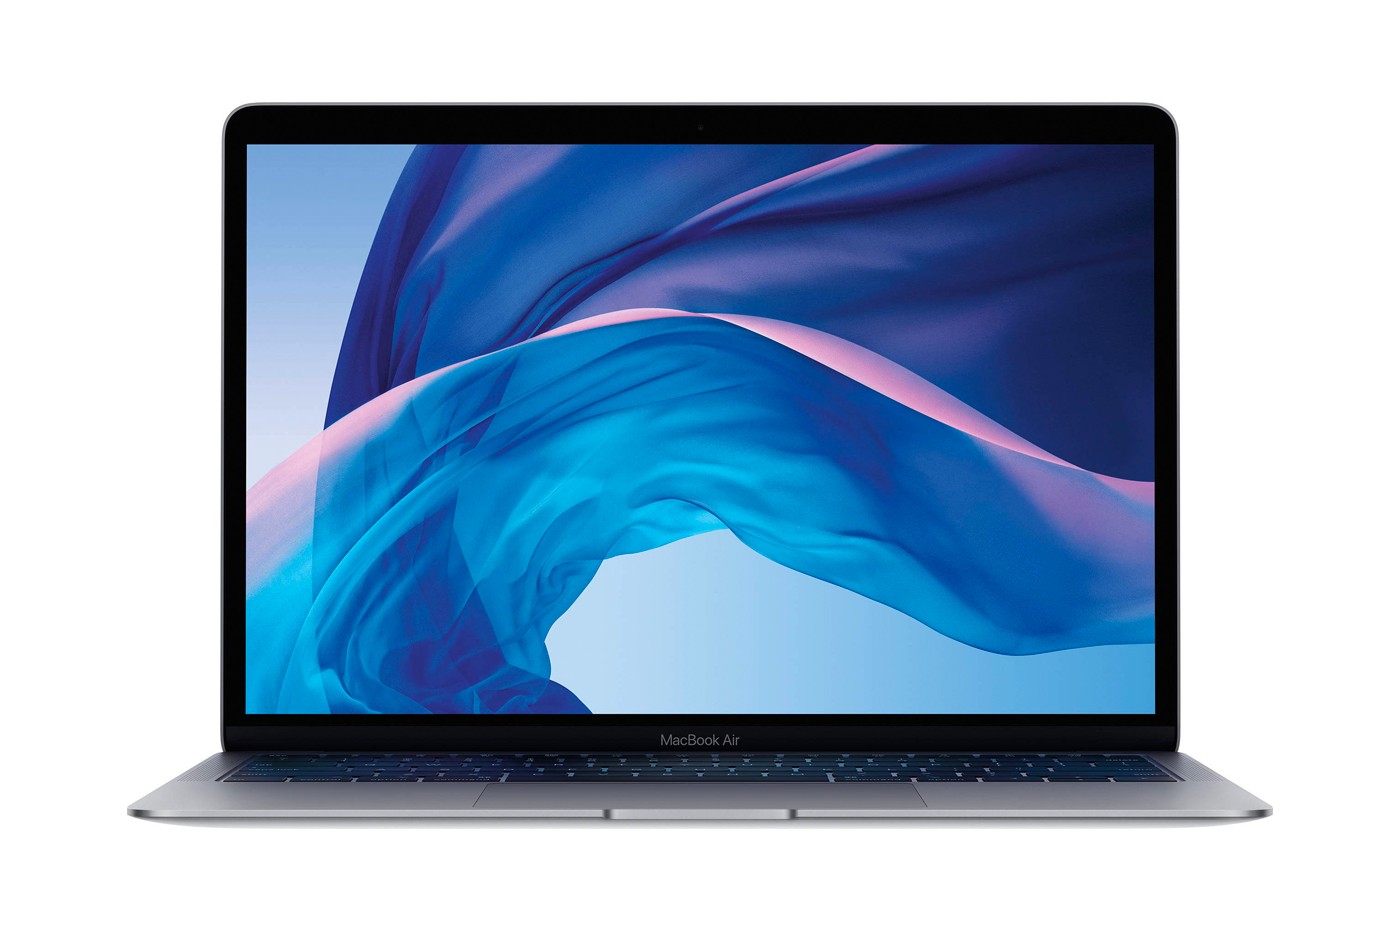 消息称 Apple 下一世代 MacBook Air 将推出更轻薄版本